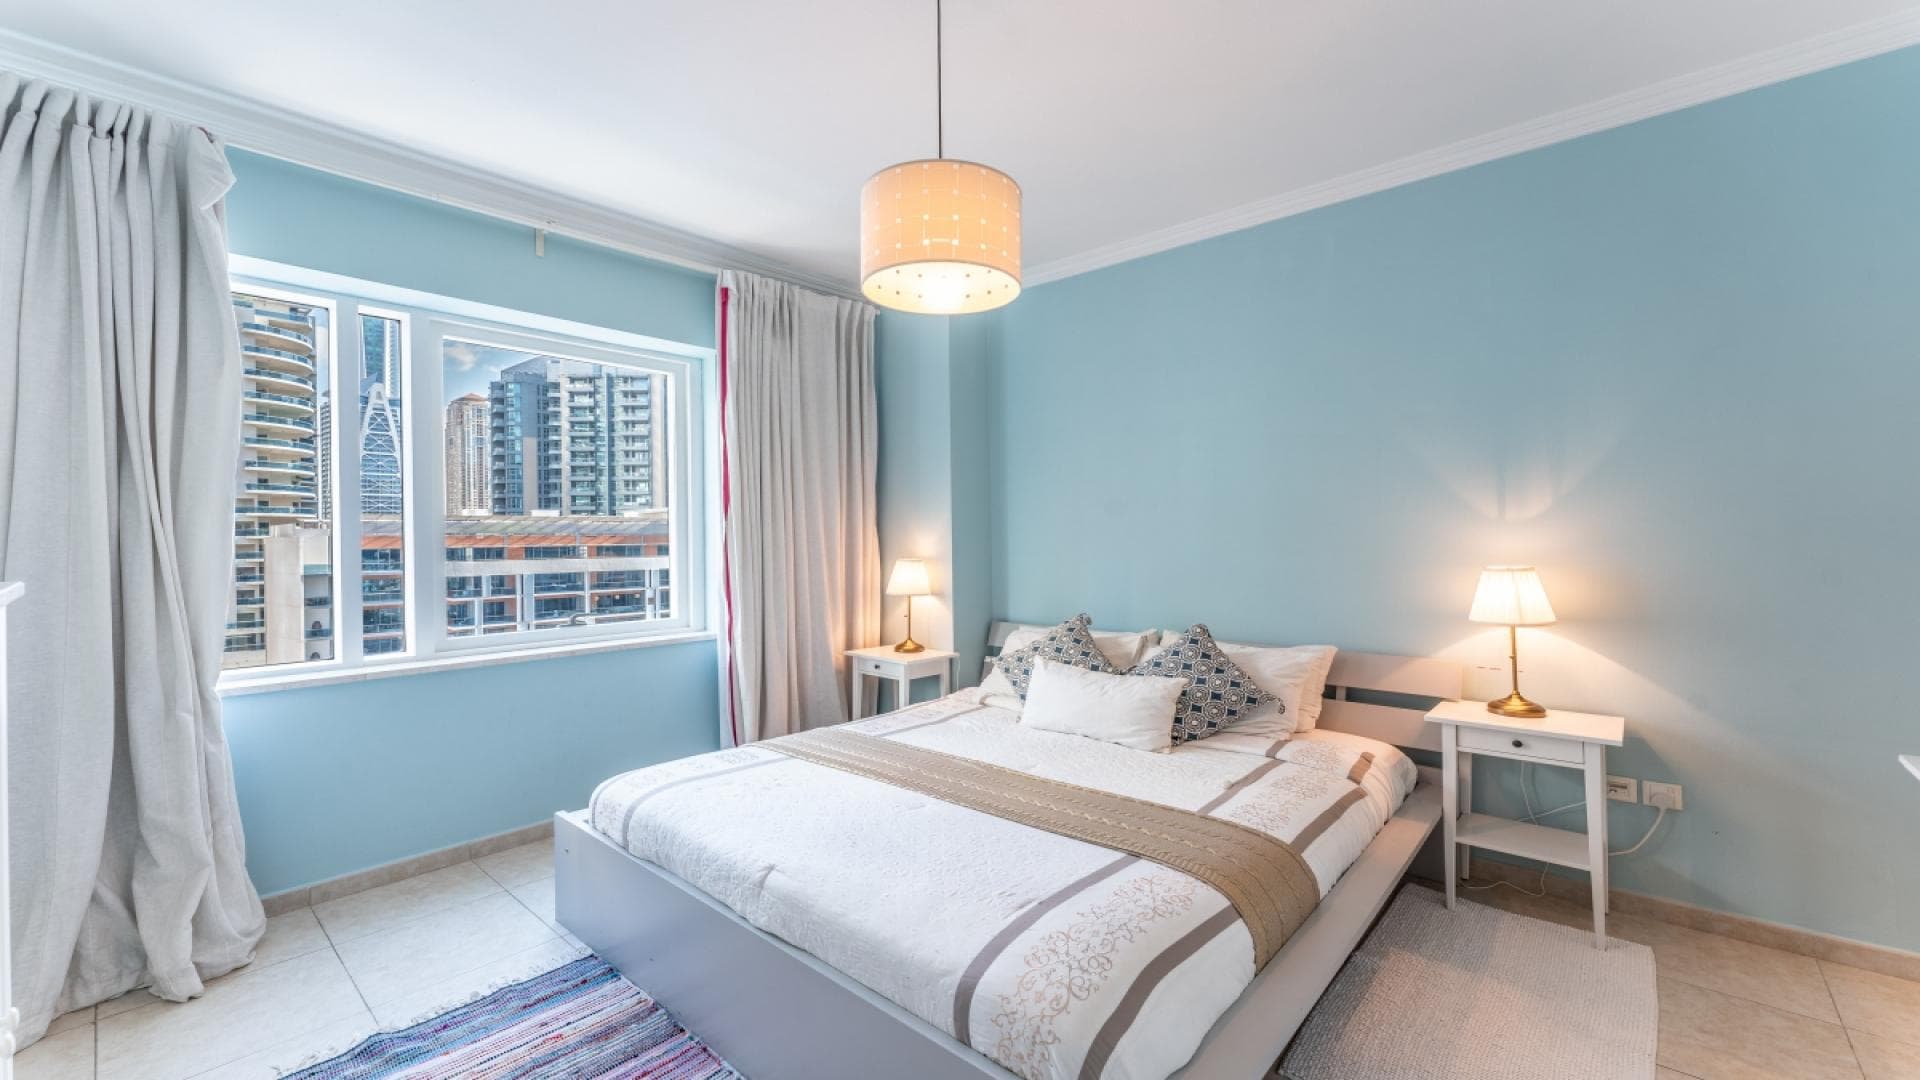 4 Bedroom Apartment For Rent Al Thamam 33 Lp38759 2d0e90bb177a0600.jpg